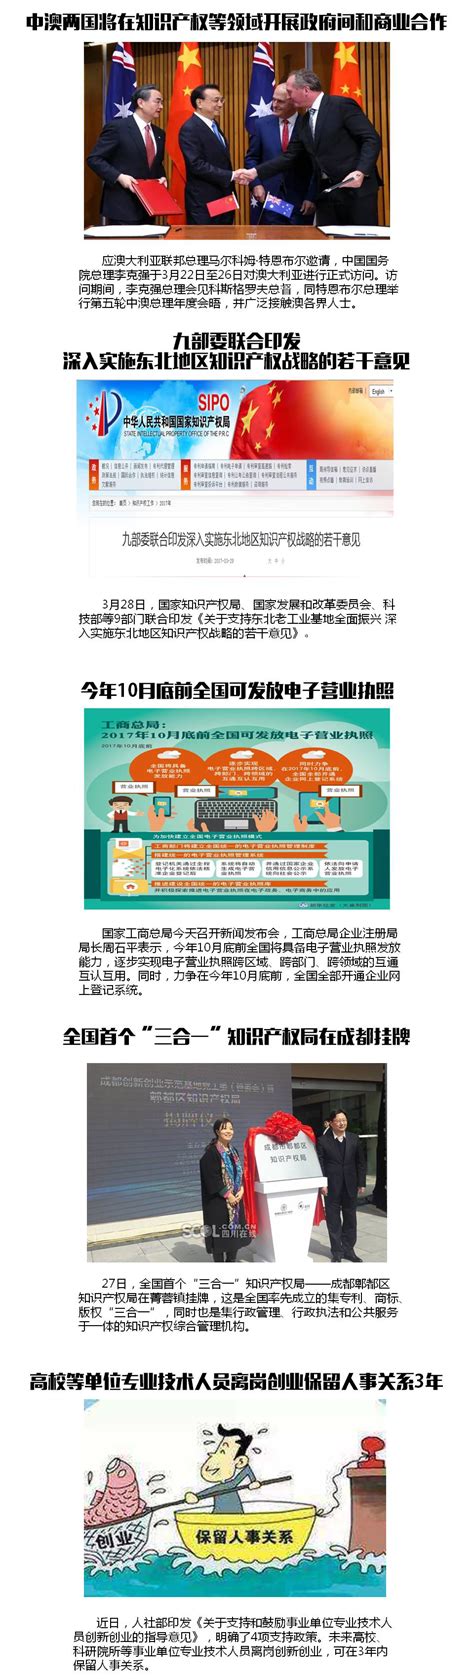 一周大事记1.8-1.12-中国企业知识产权网